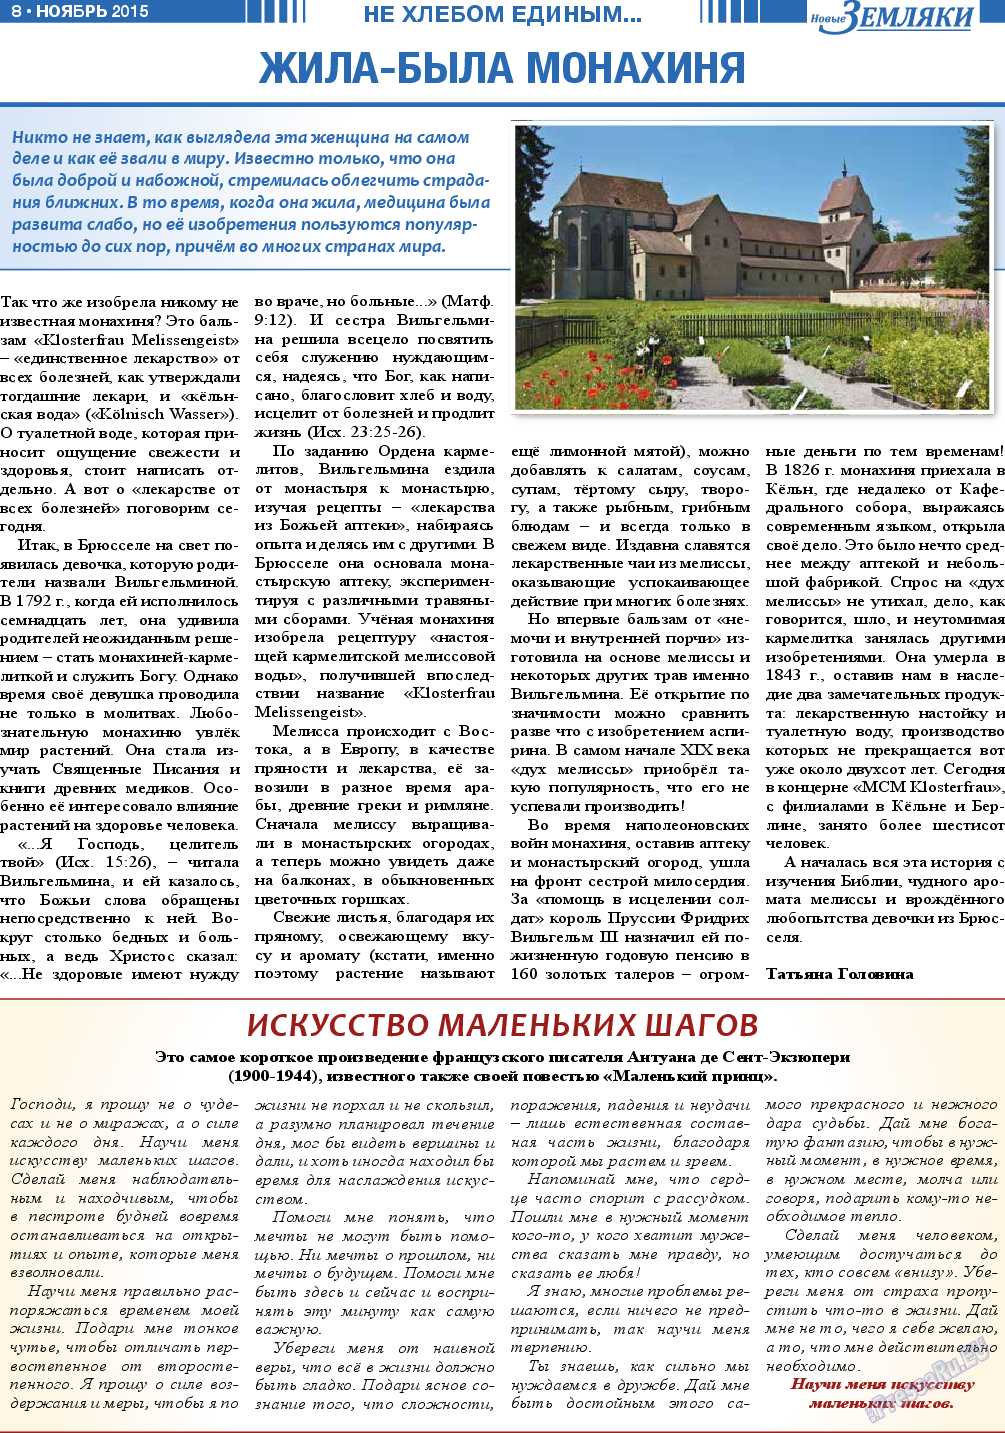 Новые Земляки, газета. 2015 №11 стр.8